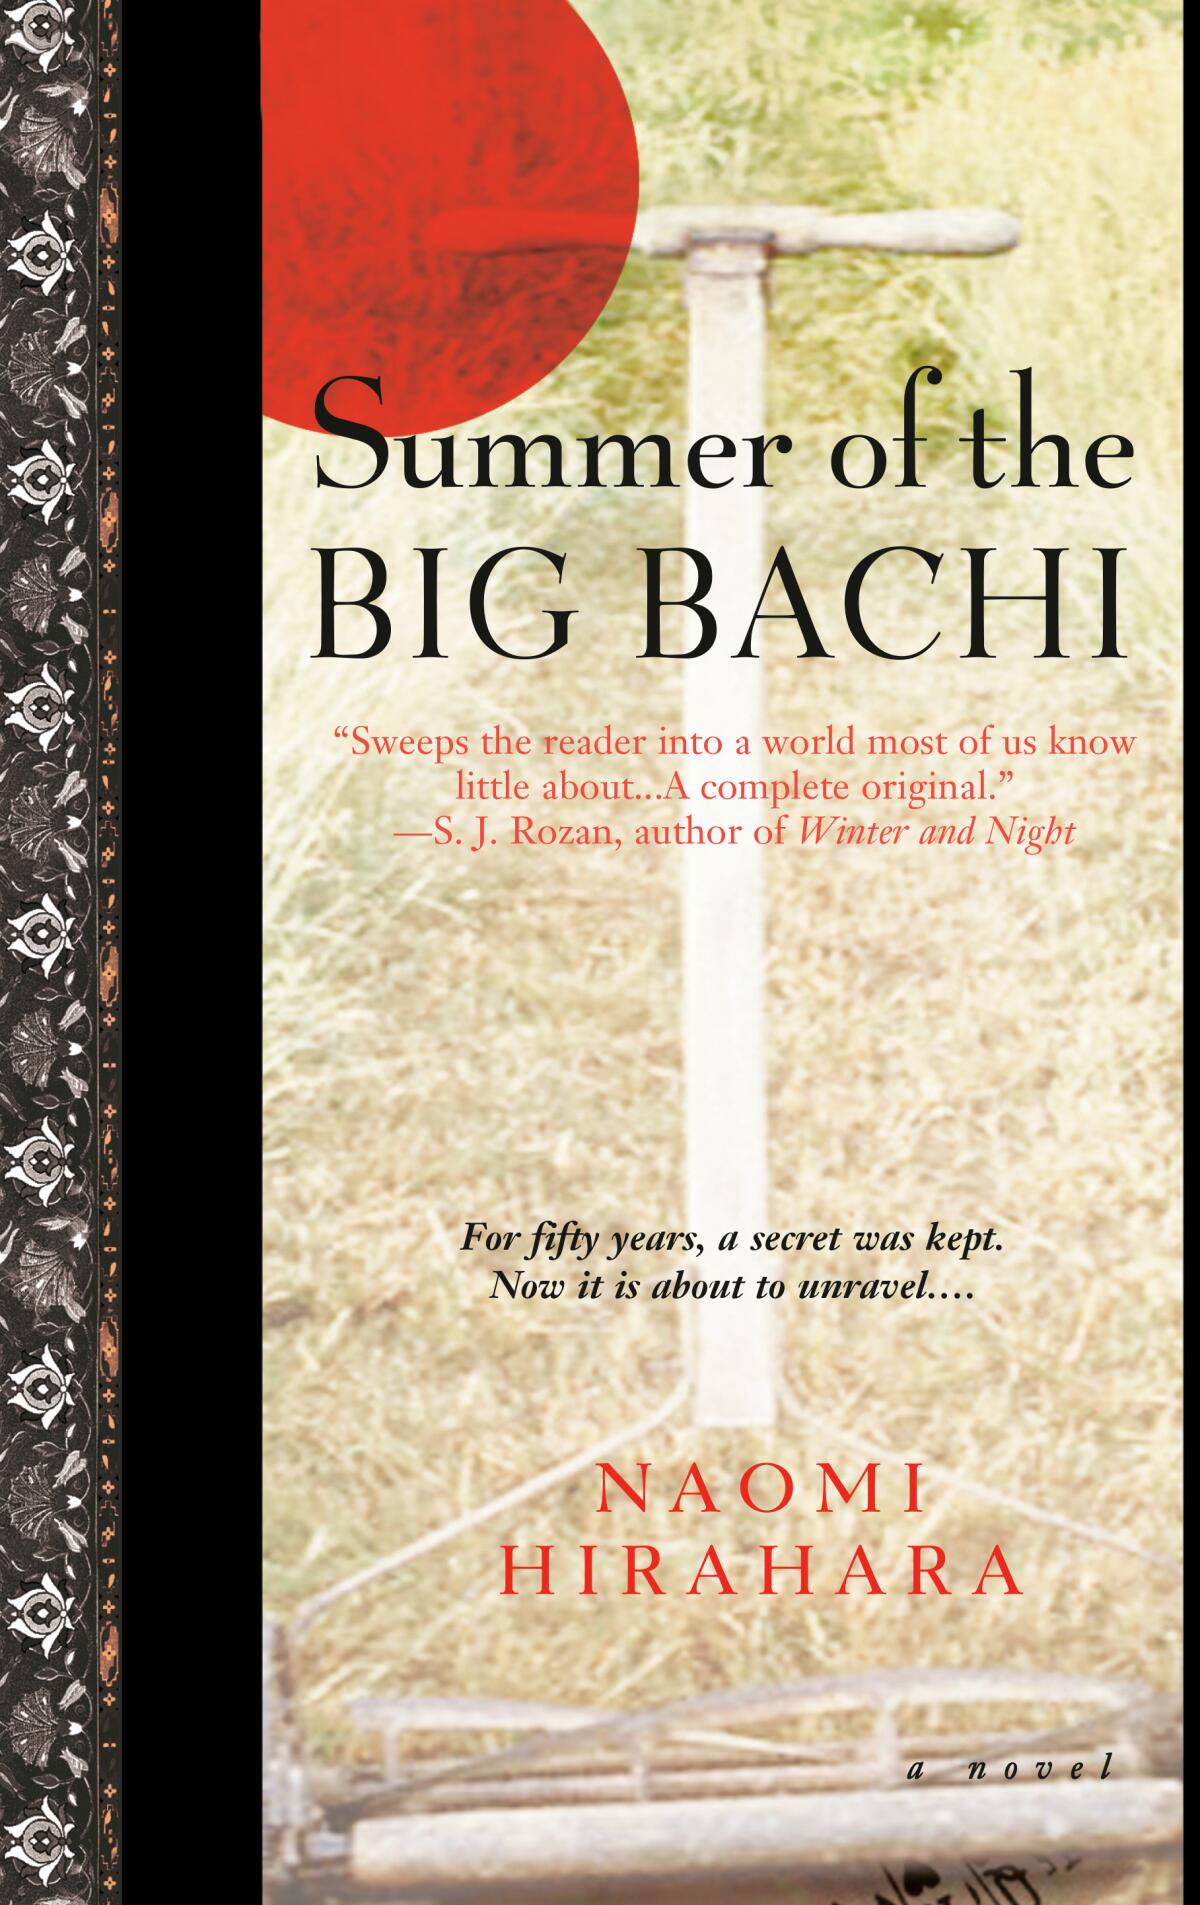 'Summer of the Big Bachi,' by Naomi Hirahara